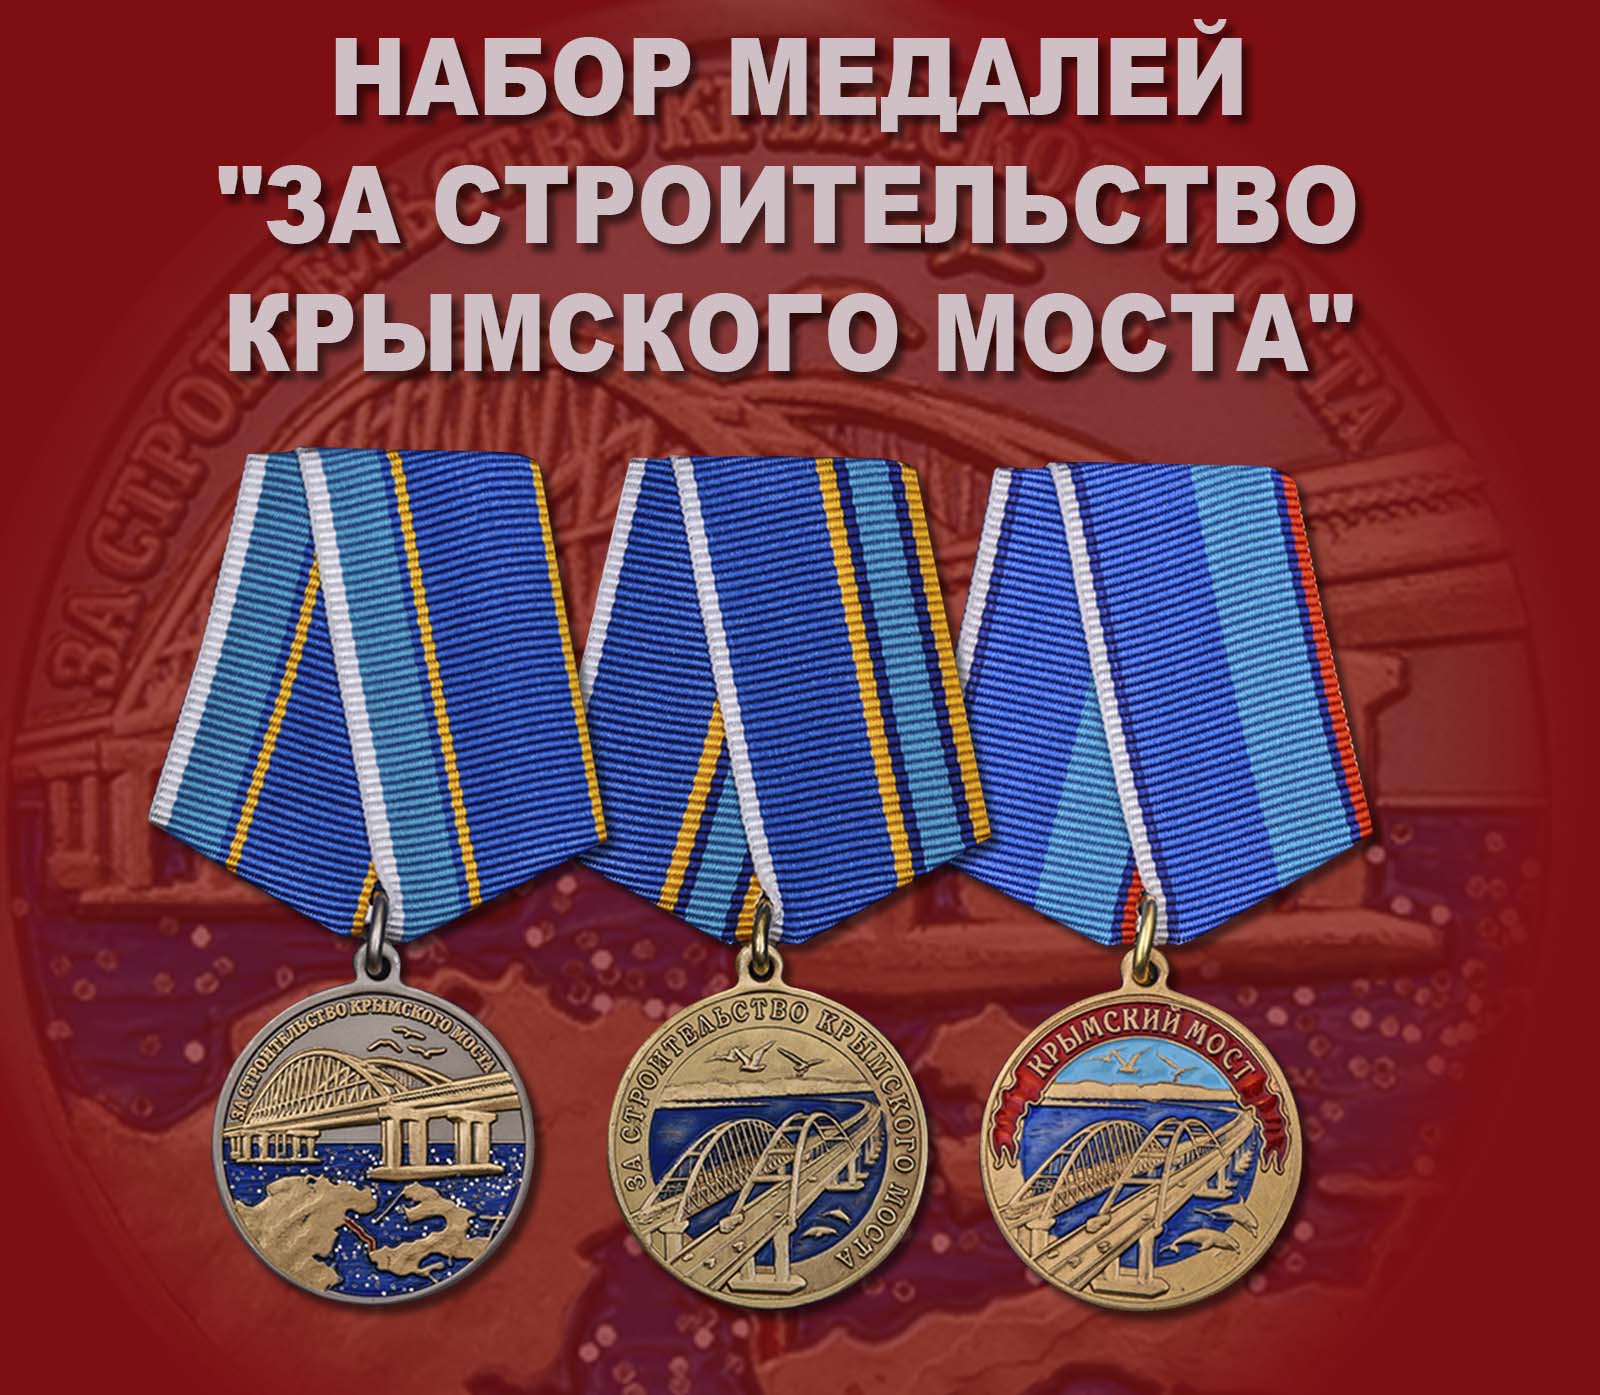 Купить набор медалей "За строительство Крымского моста"